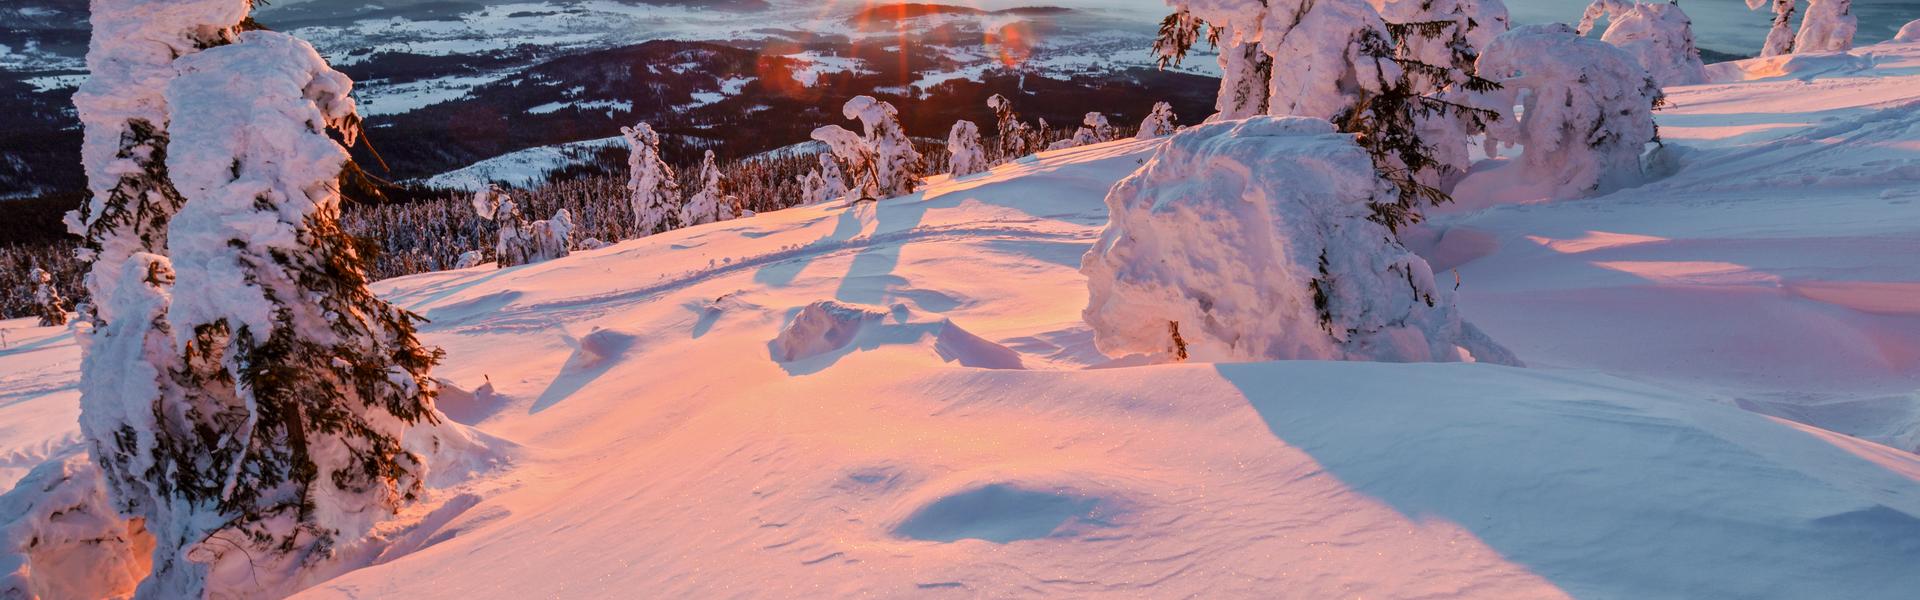 Bild: Zimowe wędrówki po górach? 3 pomysły na wycieczki, które Was zauroczą!